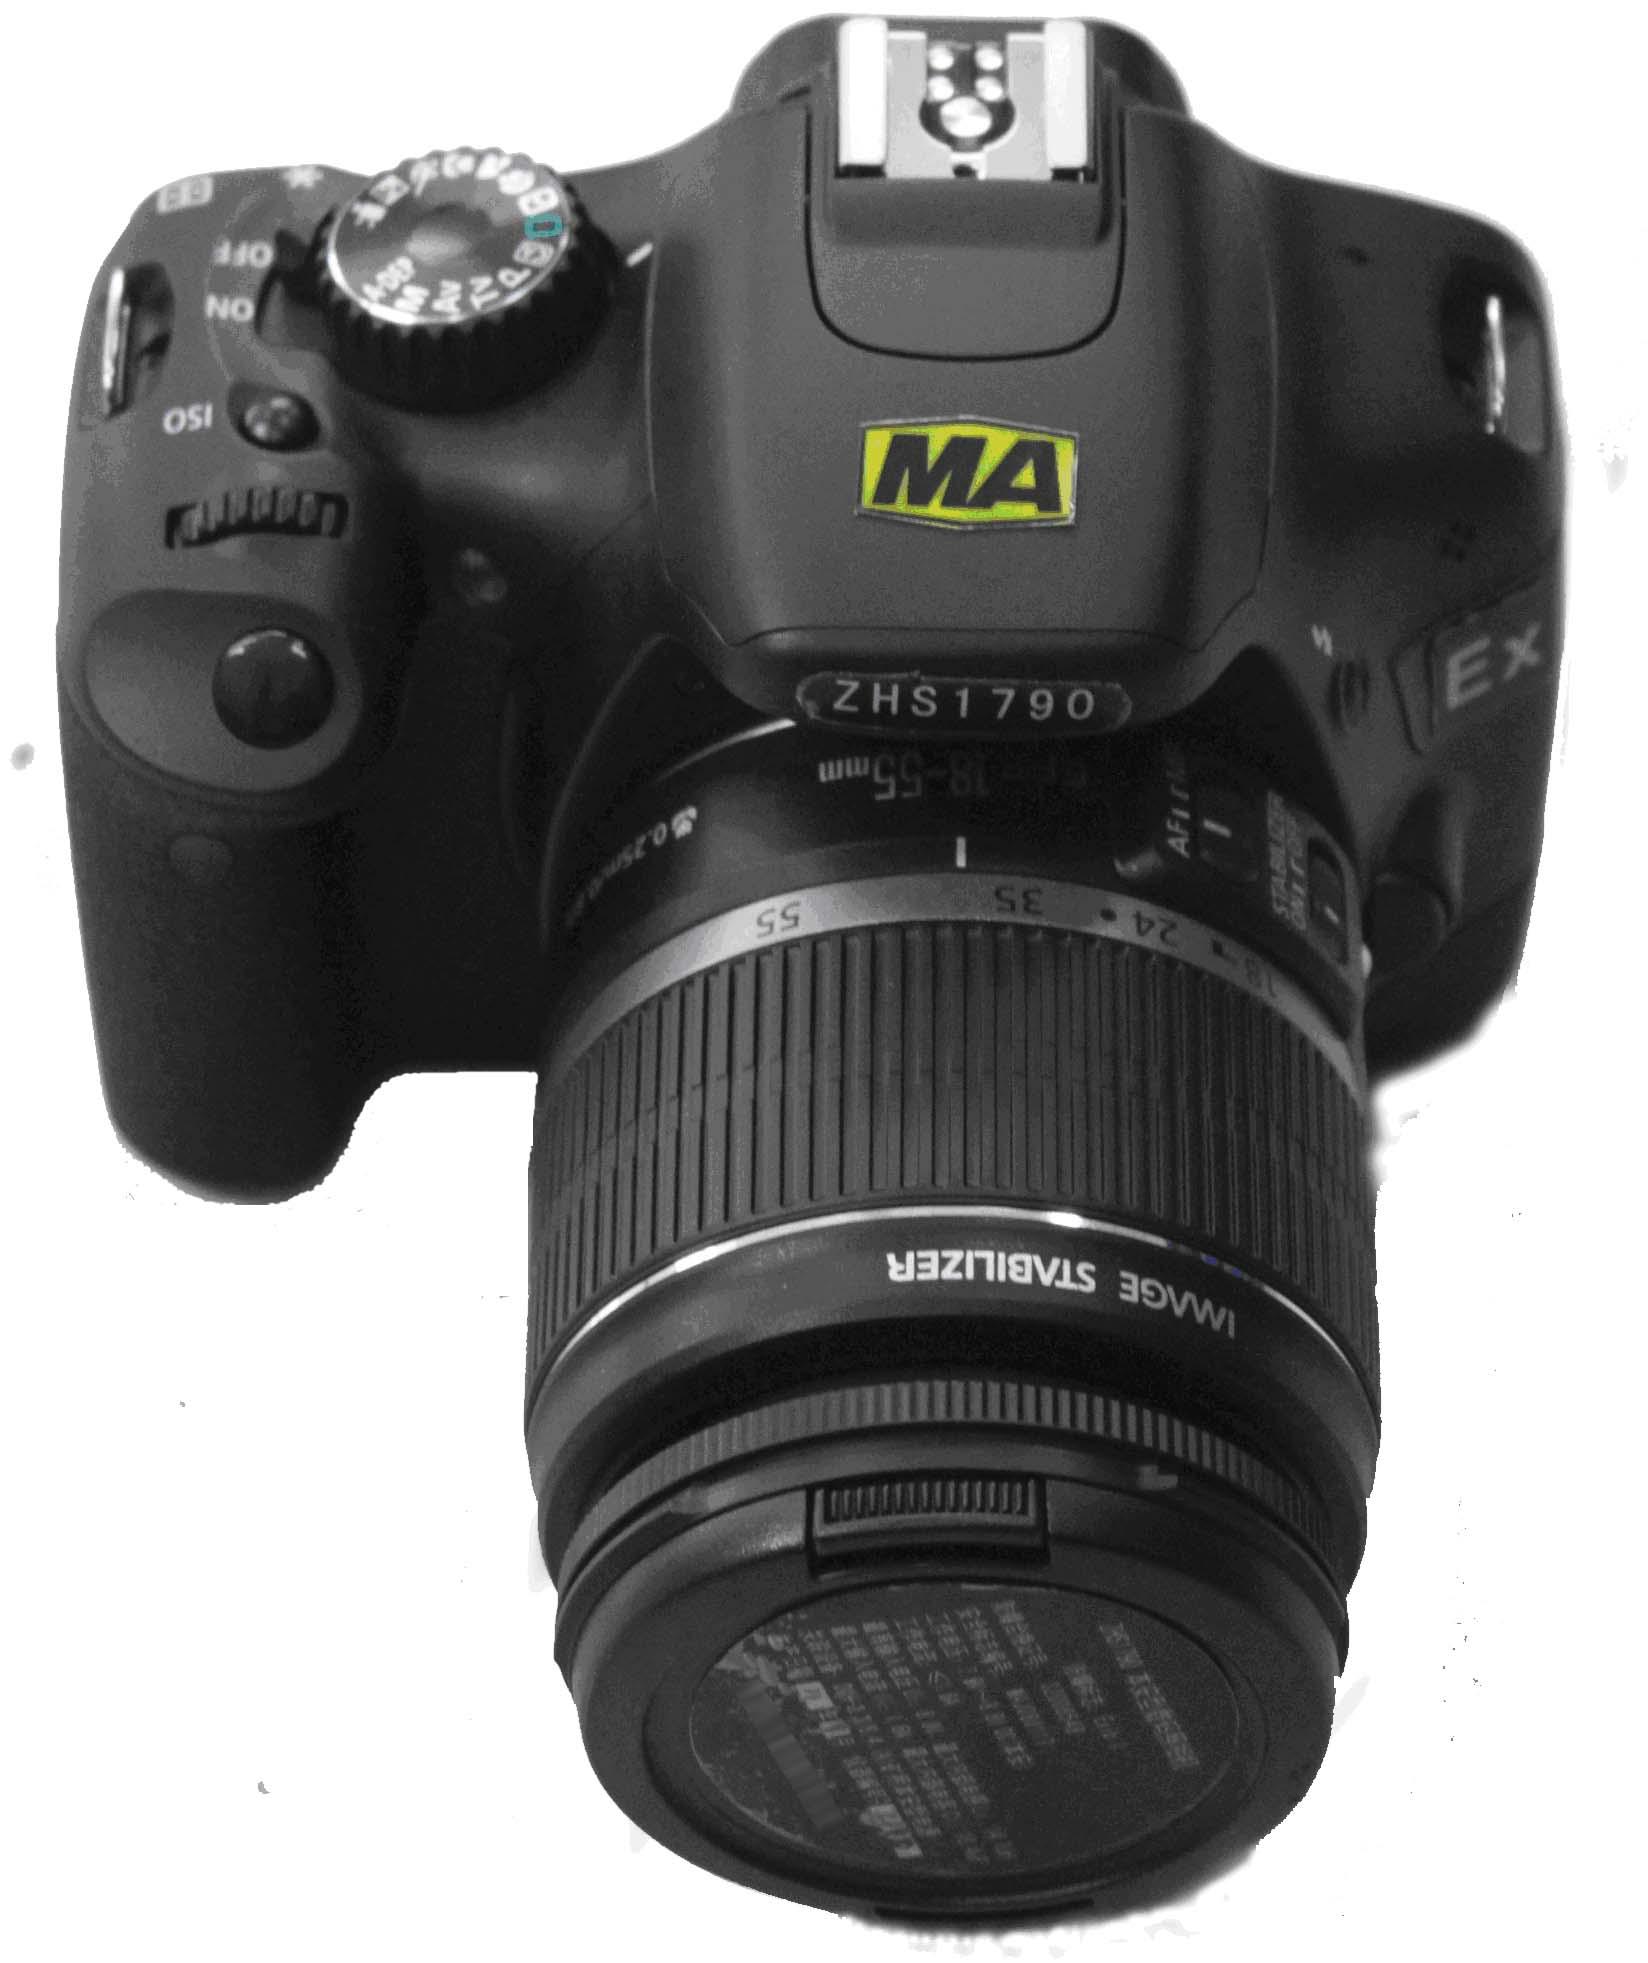 矿用高分辨率防爆数码相机 ZHS1790